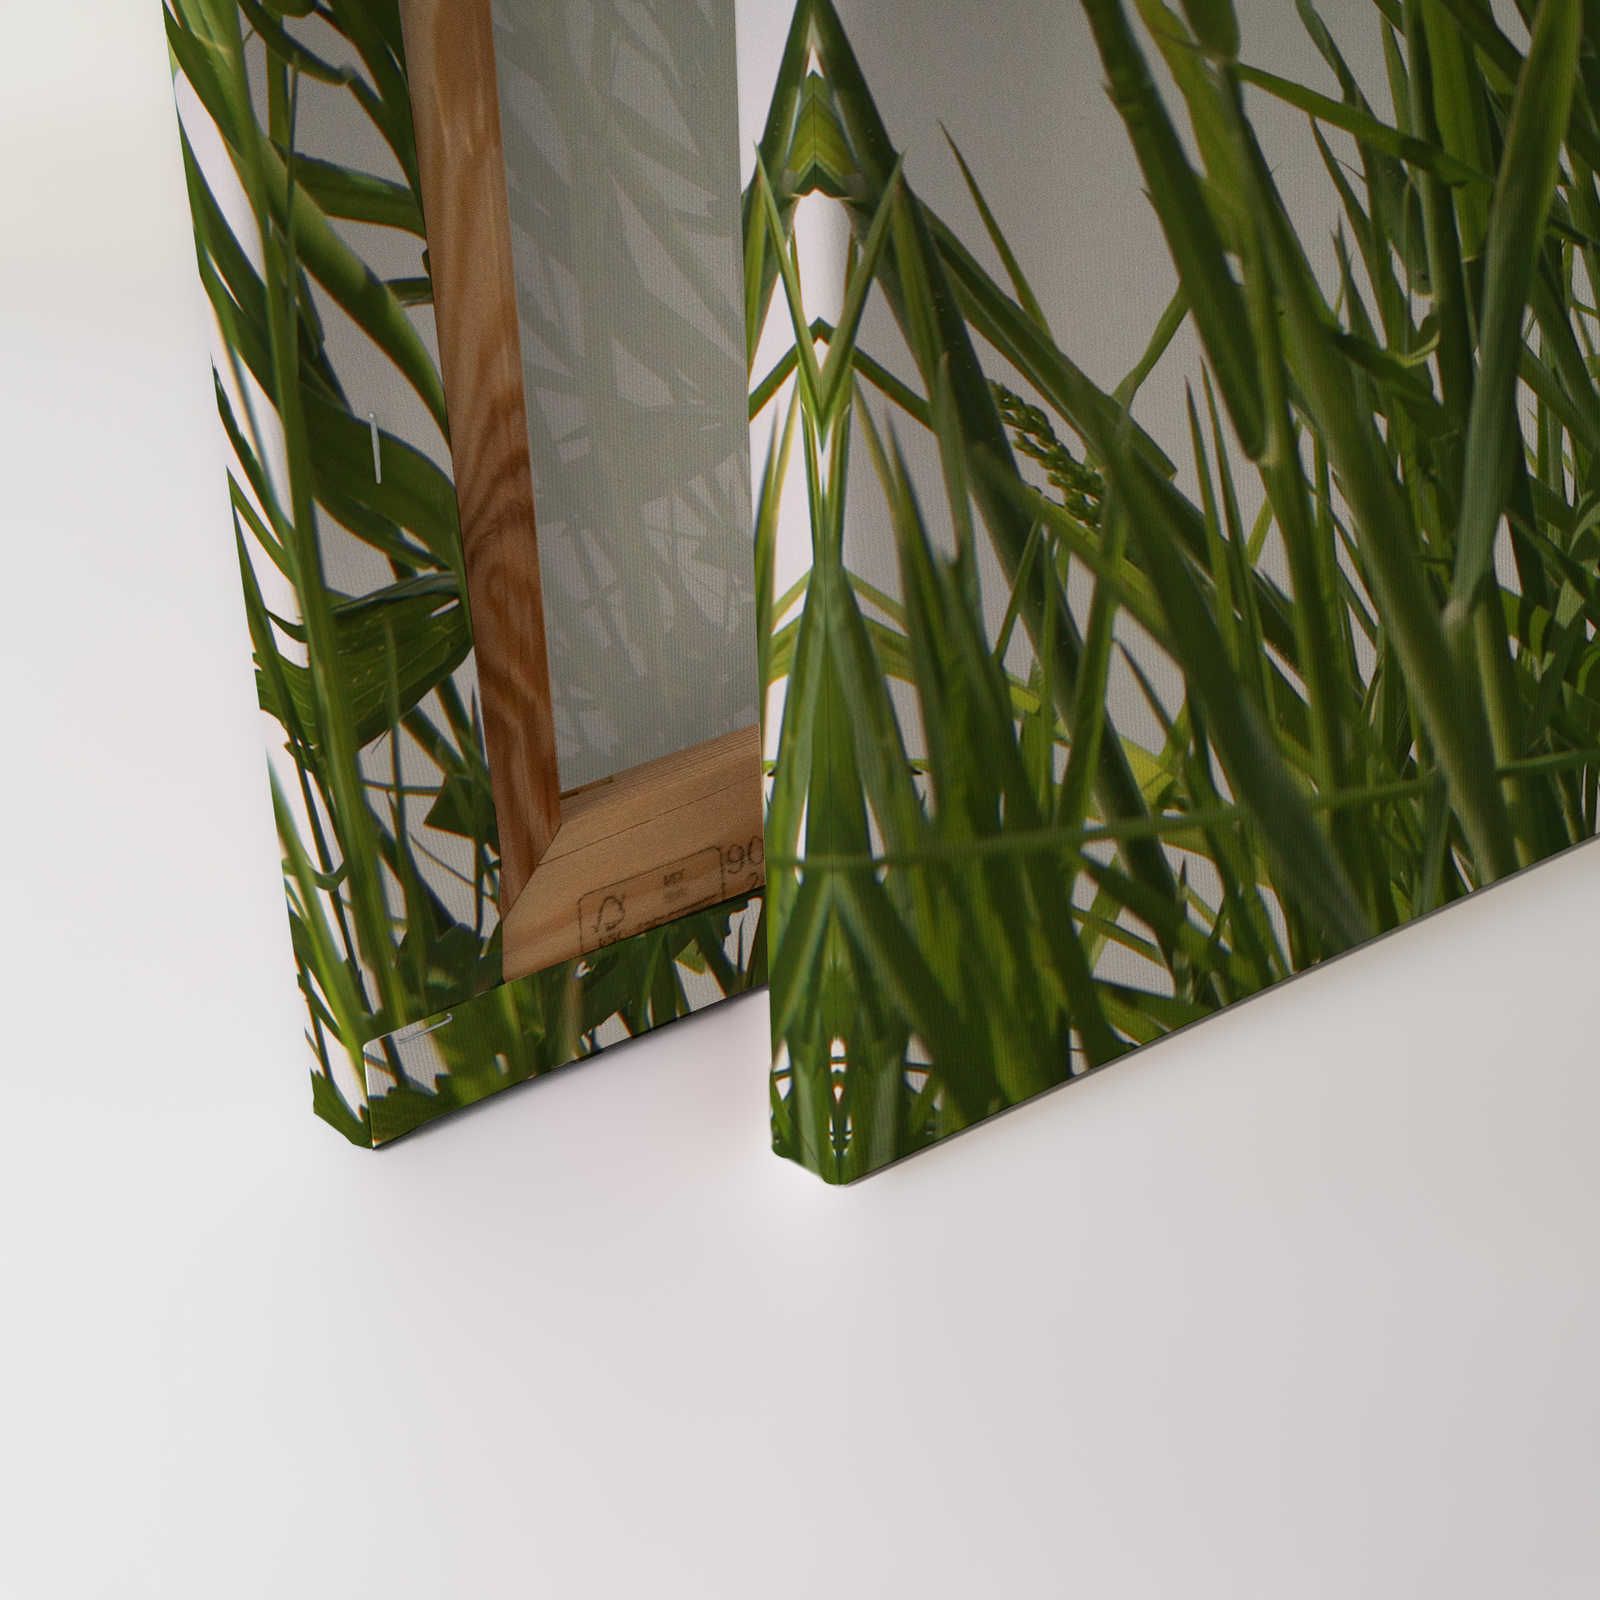             Leinwandbild Gräser Detail mit weißem Hintergrund – 0,90 m x 0,60 m
        